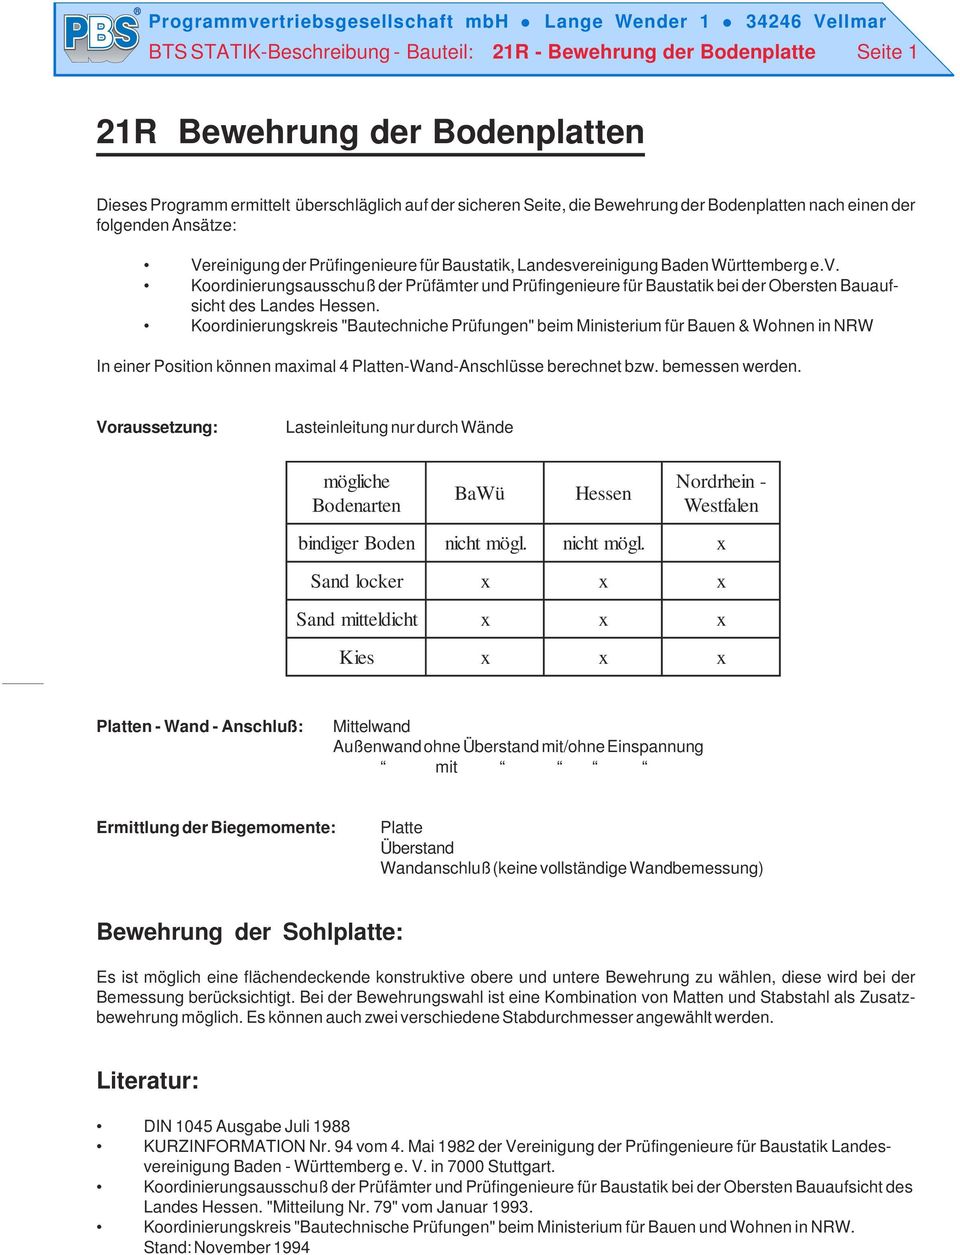 reinigung Baden Württemberg e.v. Koordinierungsausschuß der Prüfämter und Prüfingenieure für Baustatik bei der Obersten Bauaufsicht des Landes Hessen.